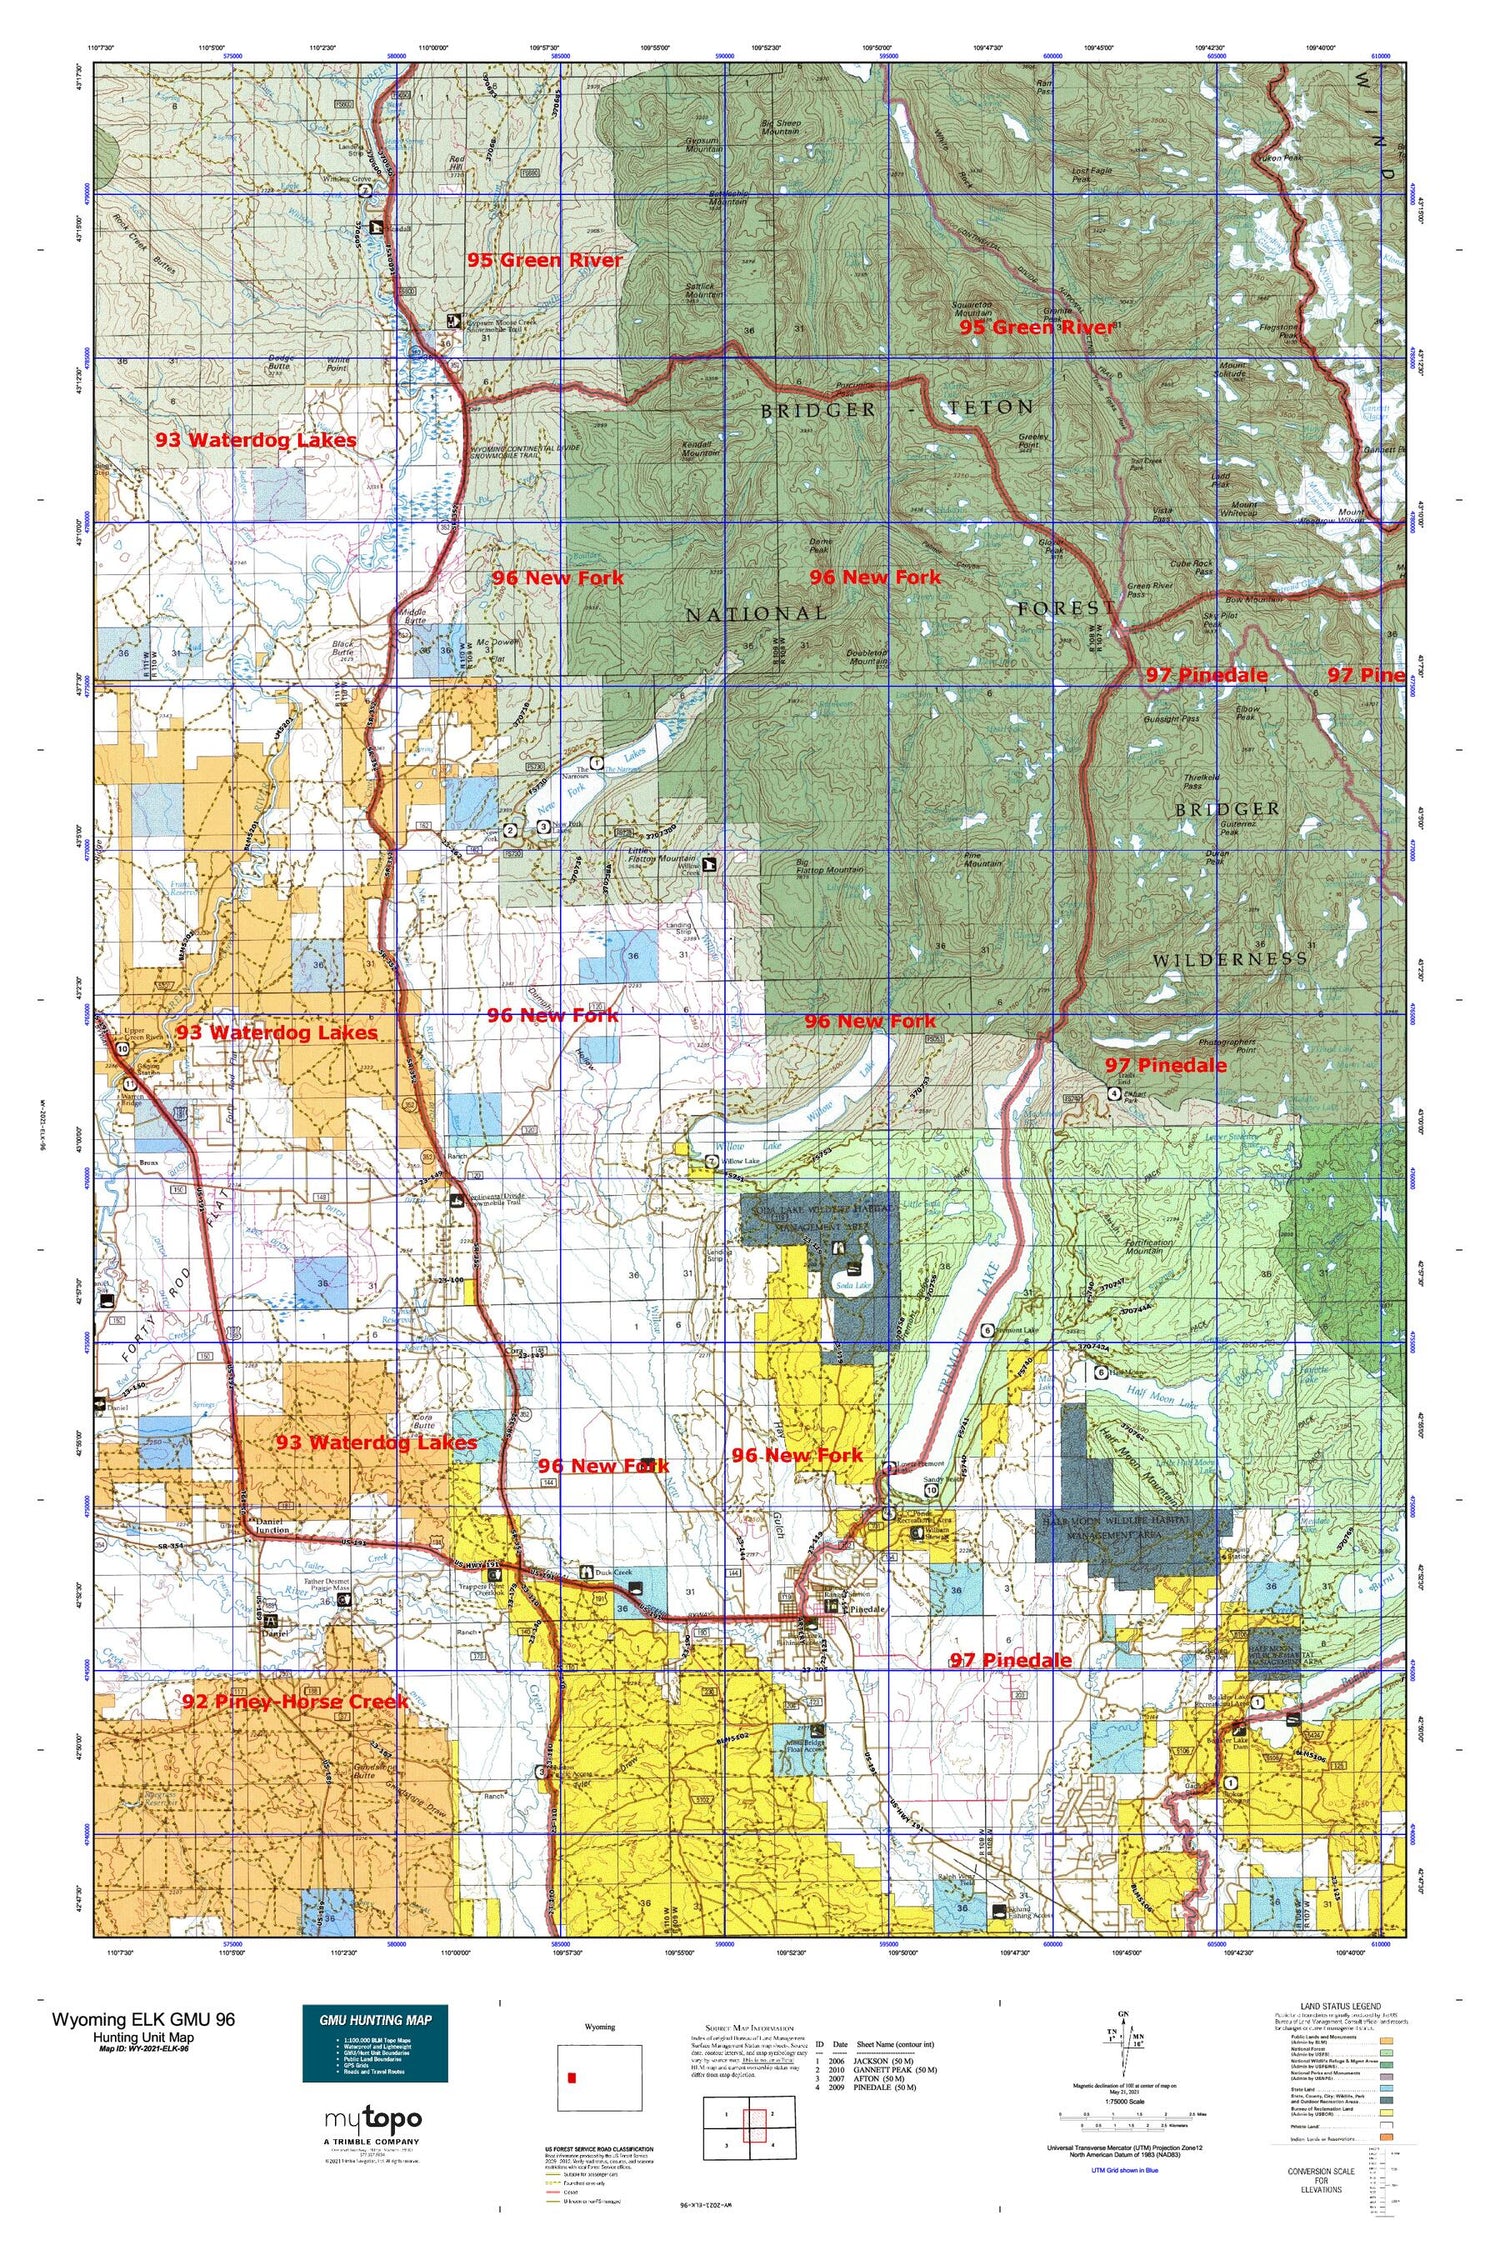 Wyoming Elk GMU 96 Map Image